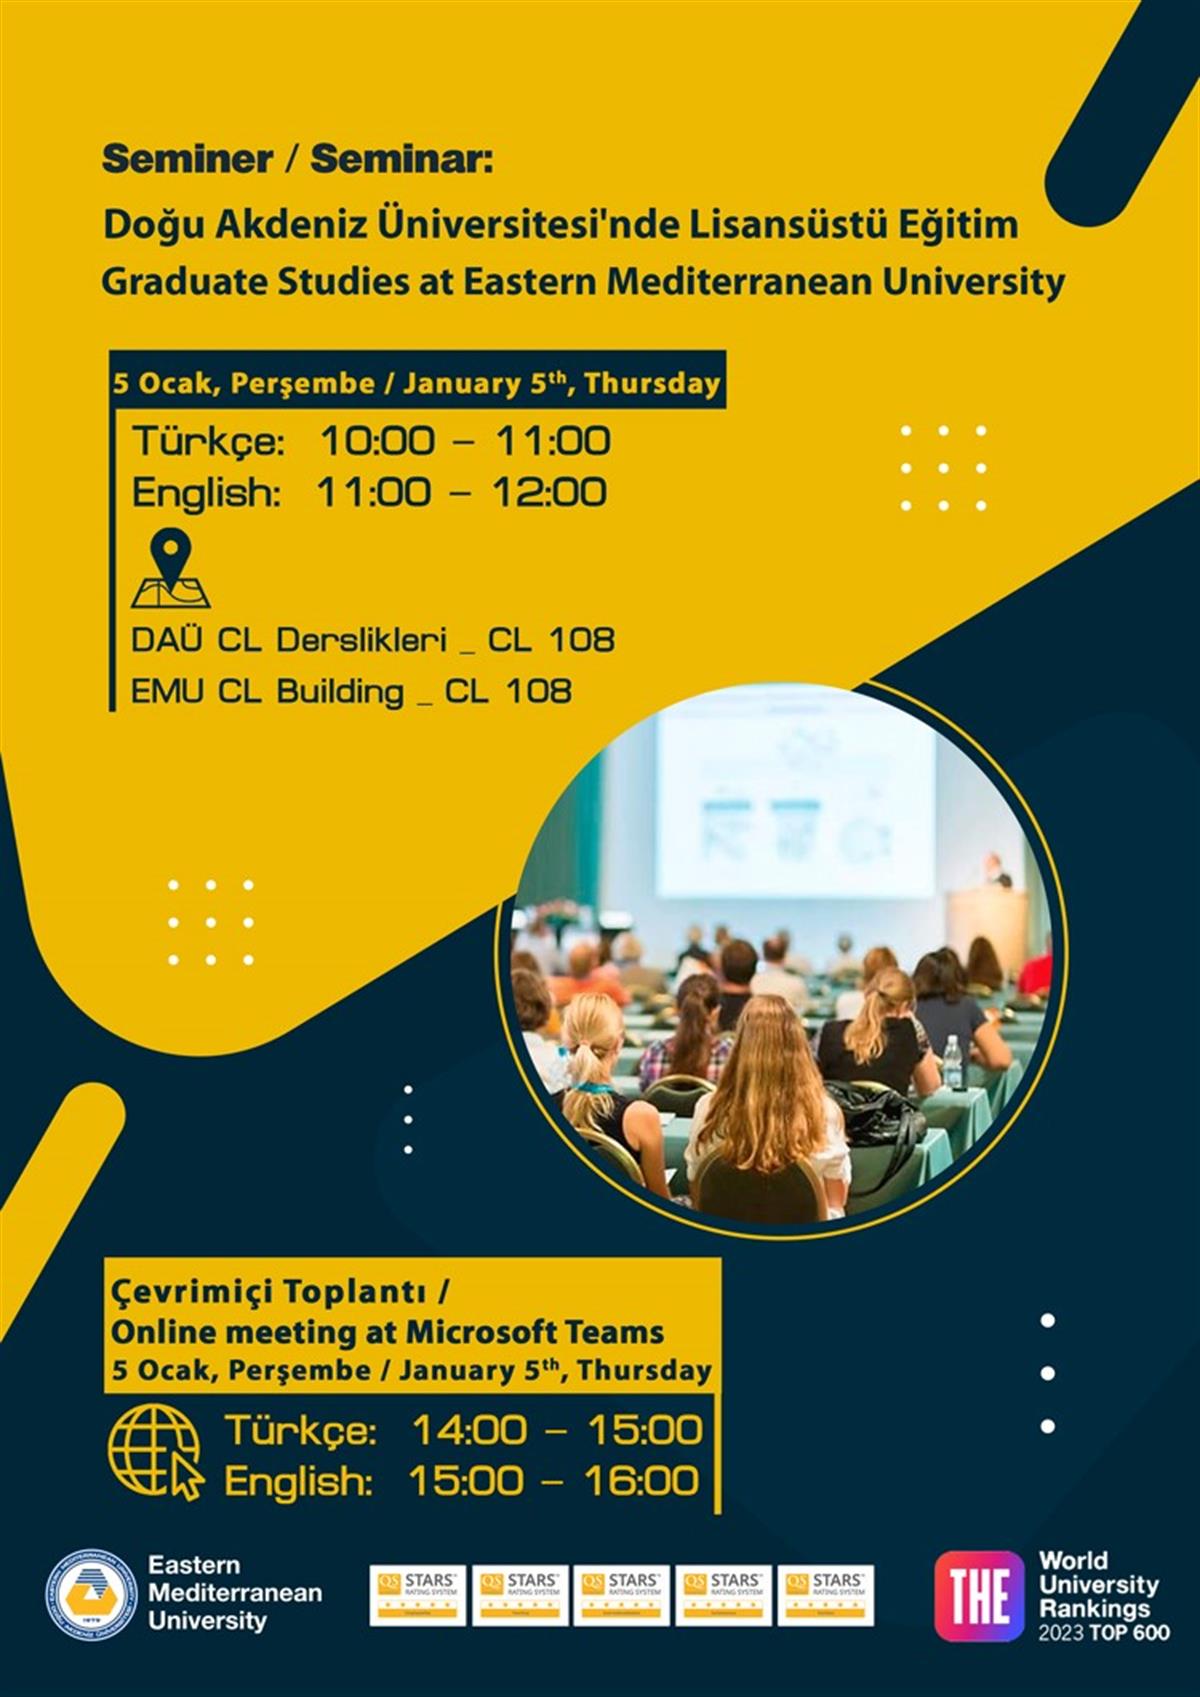 Seminer: Doğu Akdeniz Üniversitesinde Yüksek Lisans Eğitim